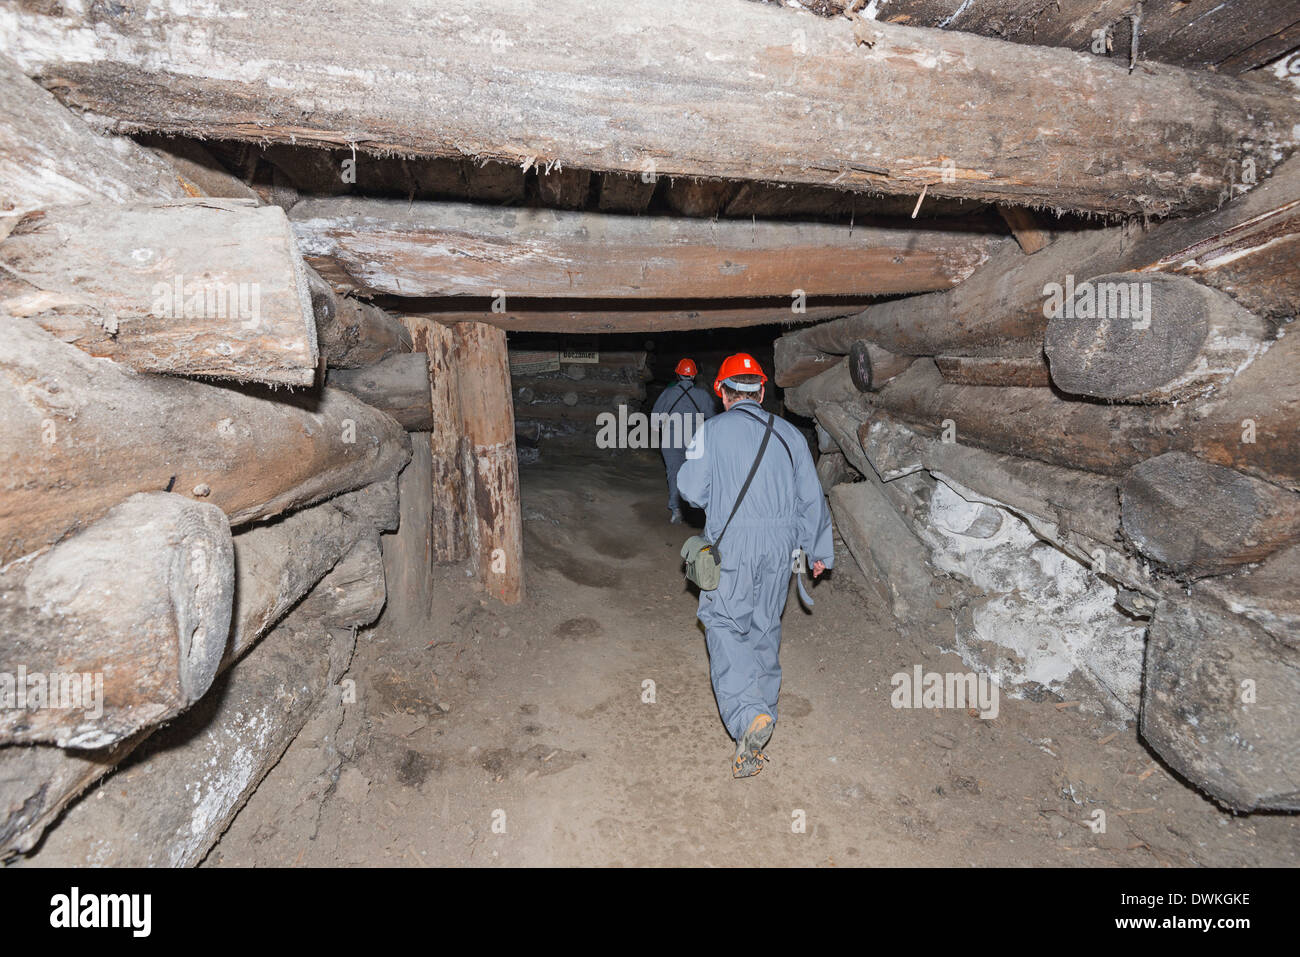 Route de mineurs, la mine de sel de Wieliczka, Site du patrimoine mondial de l'UNESCO, Cracovie, Pologne, Europe, Malopolska Banque D'Images